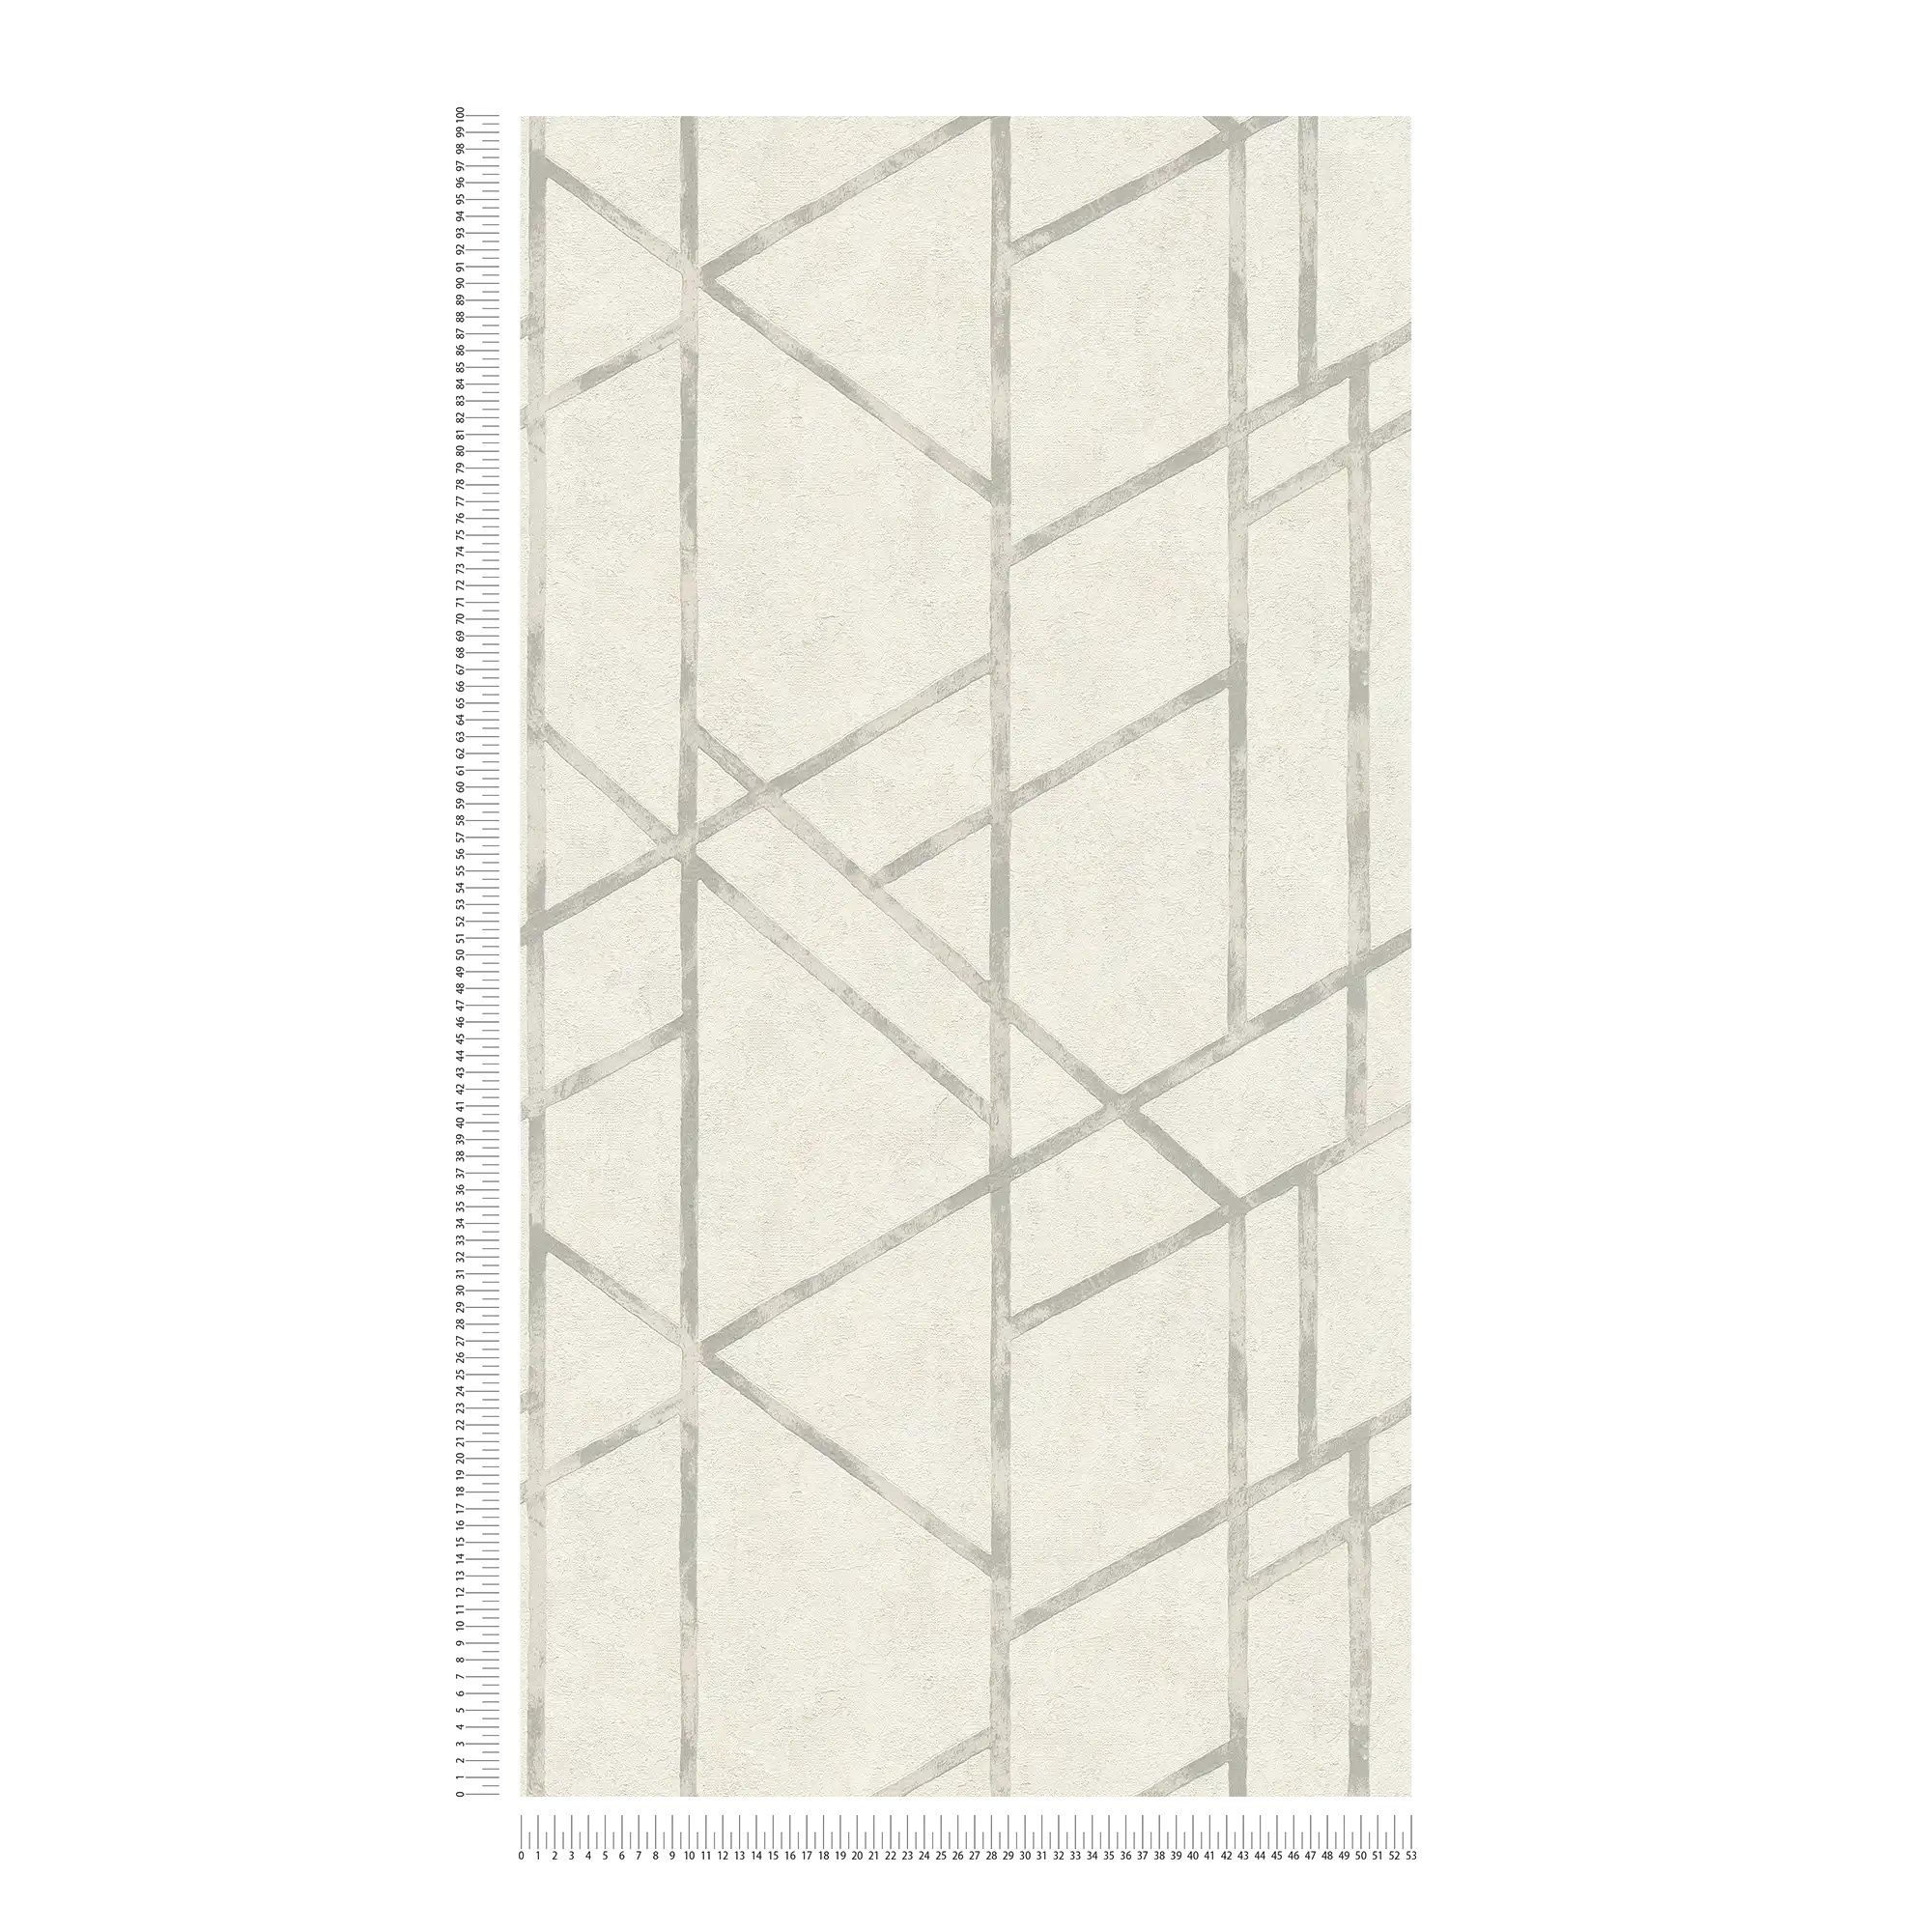             Carta da parati in cemento con motivo grafico argentato - argento, bianco
        